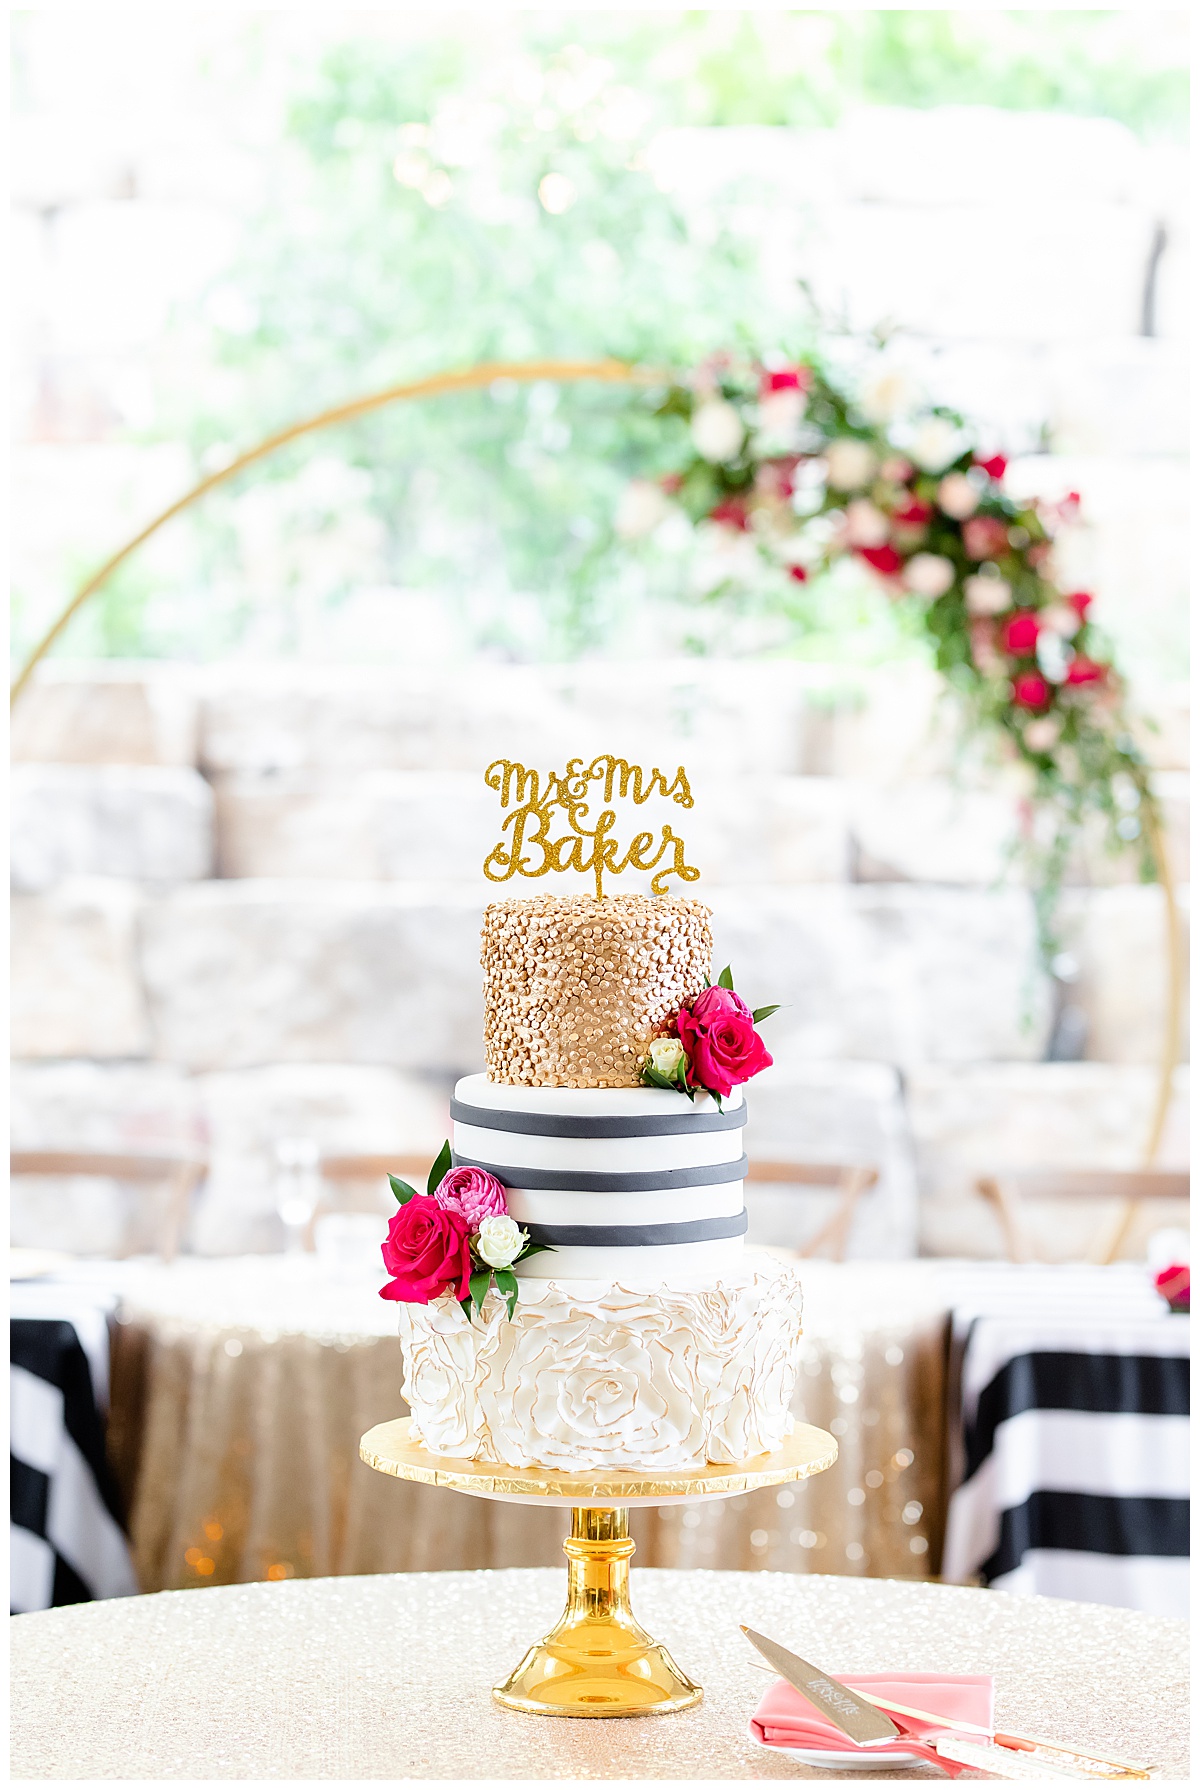 Kate Spade inspired wedding cake